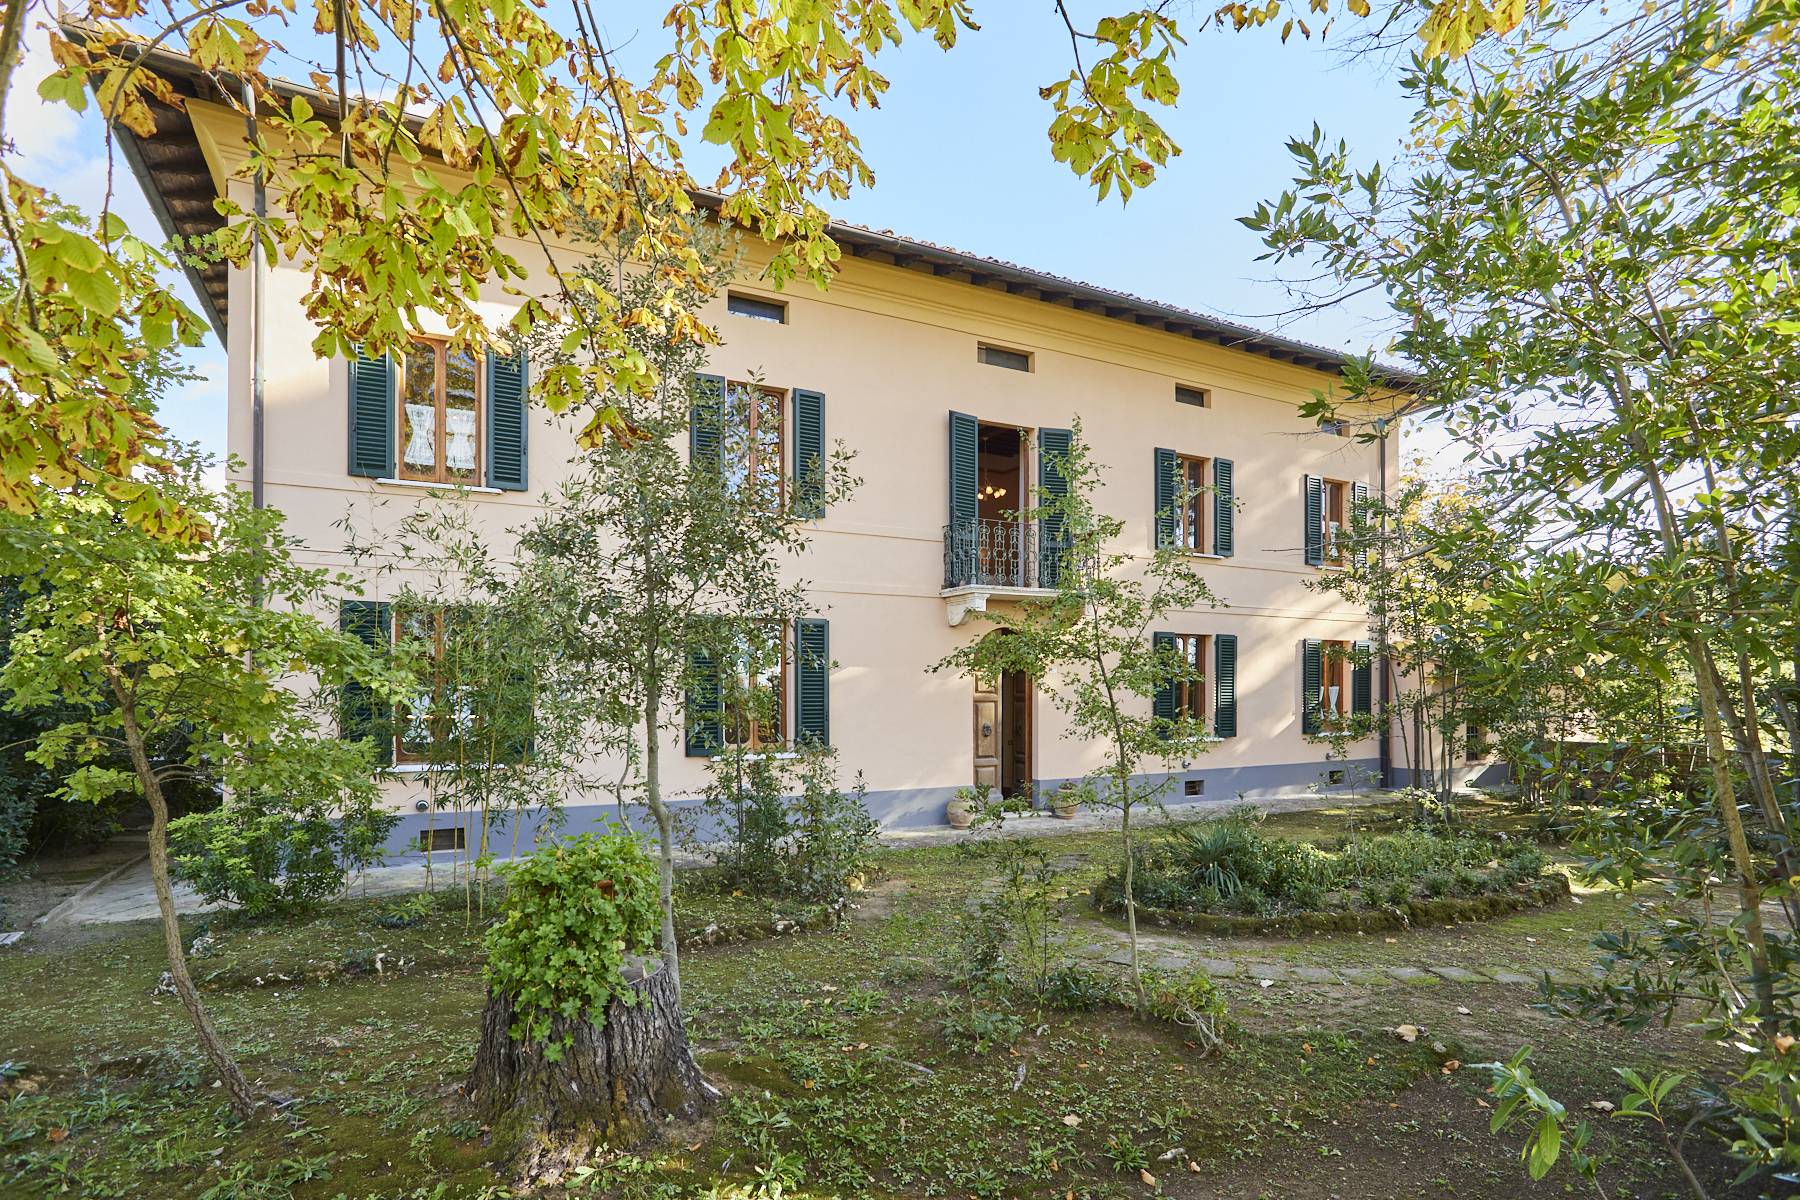 Villa in Vendita a Montepulciano: 5 locali, 860 mq - Foto 1